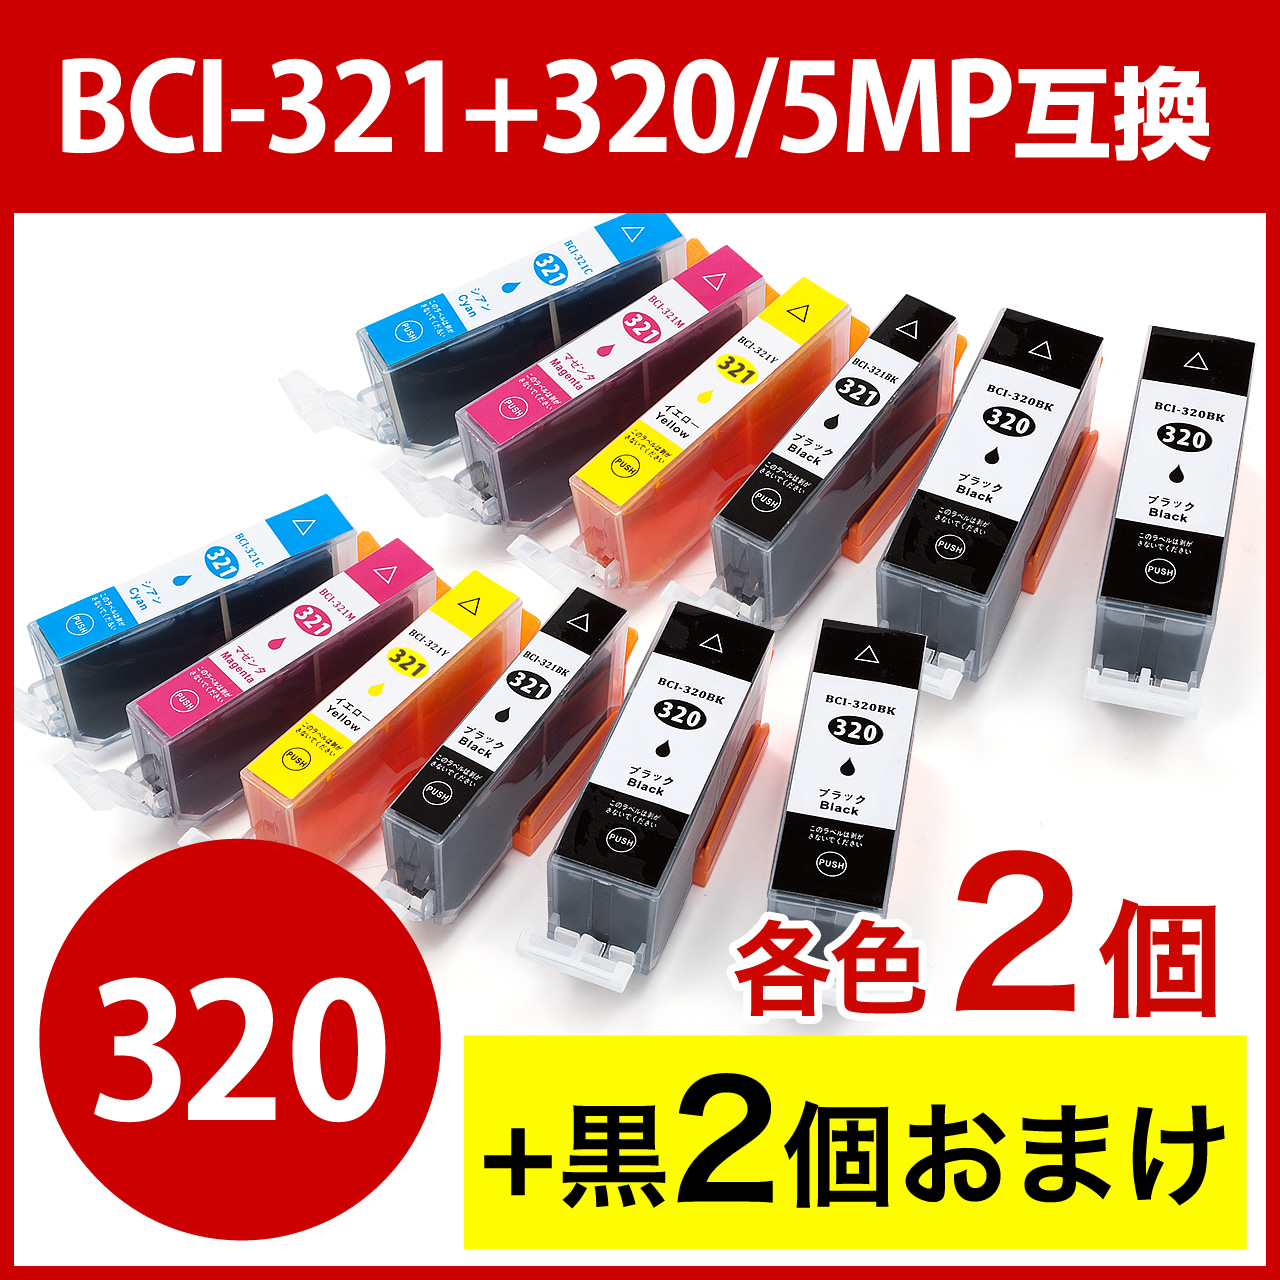 2個セット】BCI-321+320/5MP 互換インク キャノン 5色パック+顔料ブラック 302-C3203216Sの販売商品  |通販ならサンワダイレクト